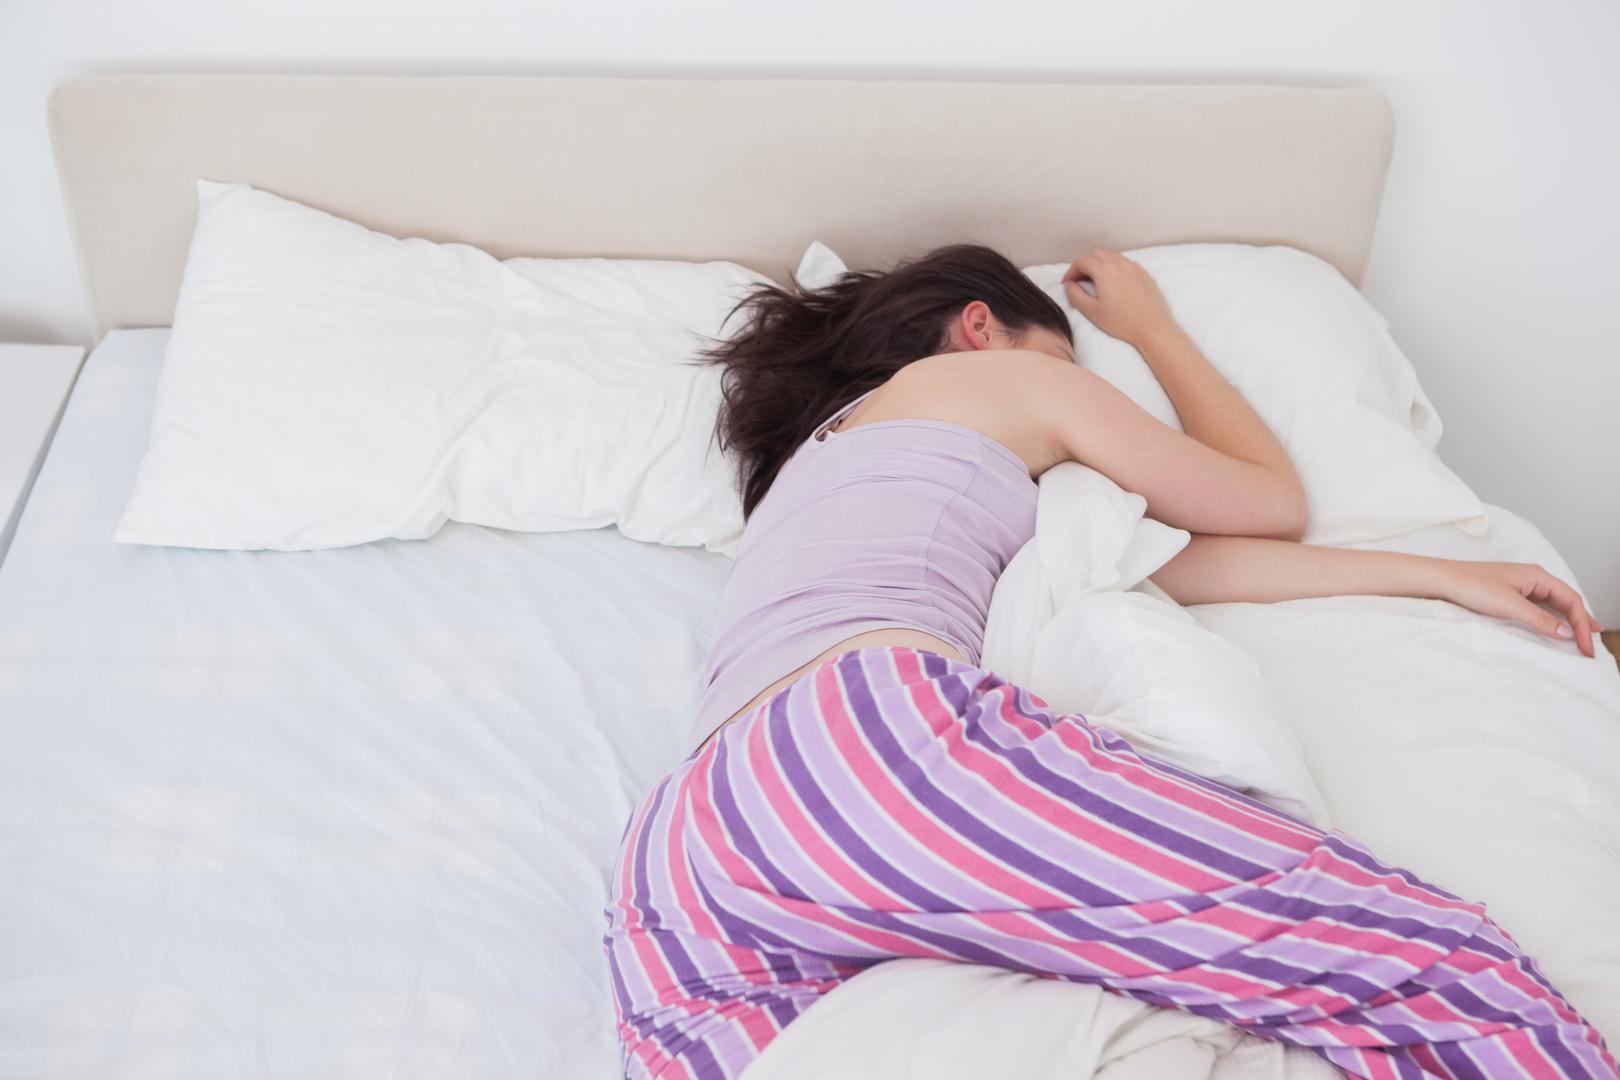 9. 'Snoozanje' alarma je dobar trik za duže spavanje: Produživanjem sna mozak se ponovno vraća u novi REM ciklus, a kada se jednom konačno odlučimo ustati tijelo će biti omamljeno i iscrpljeno.